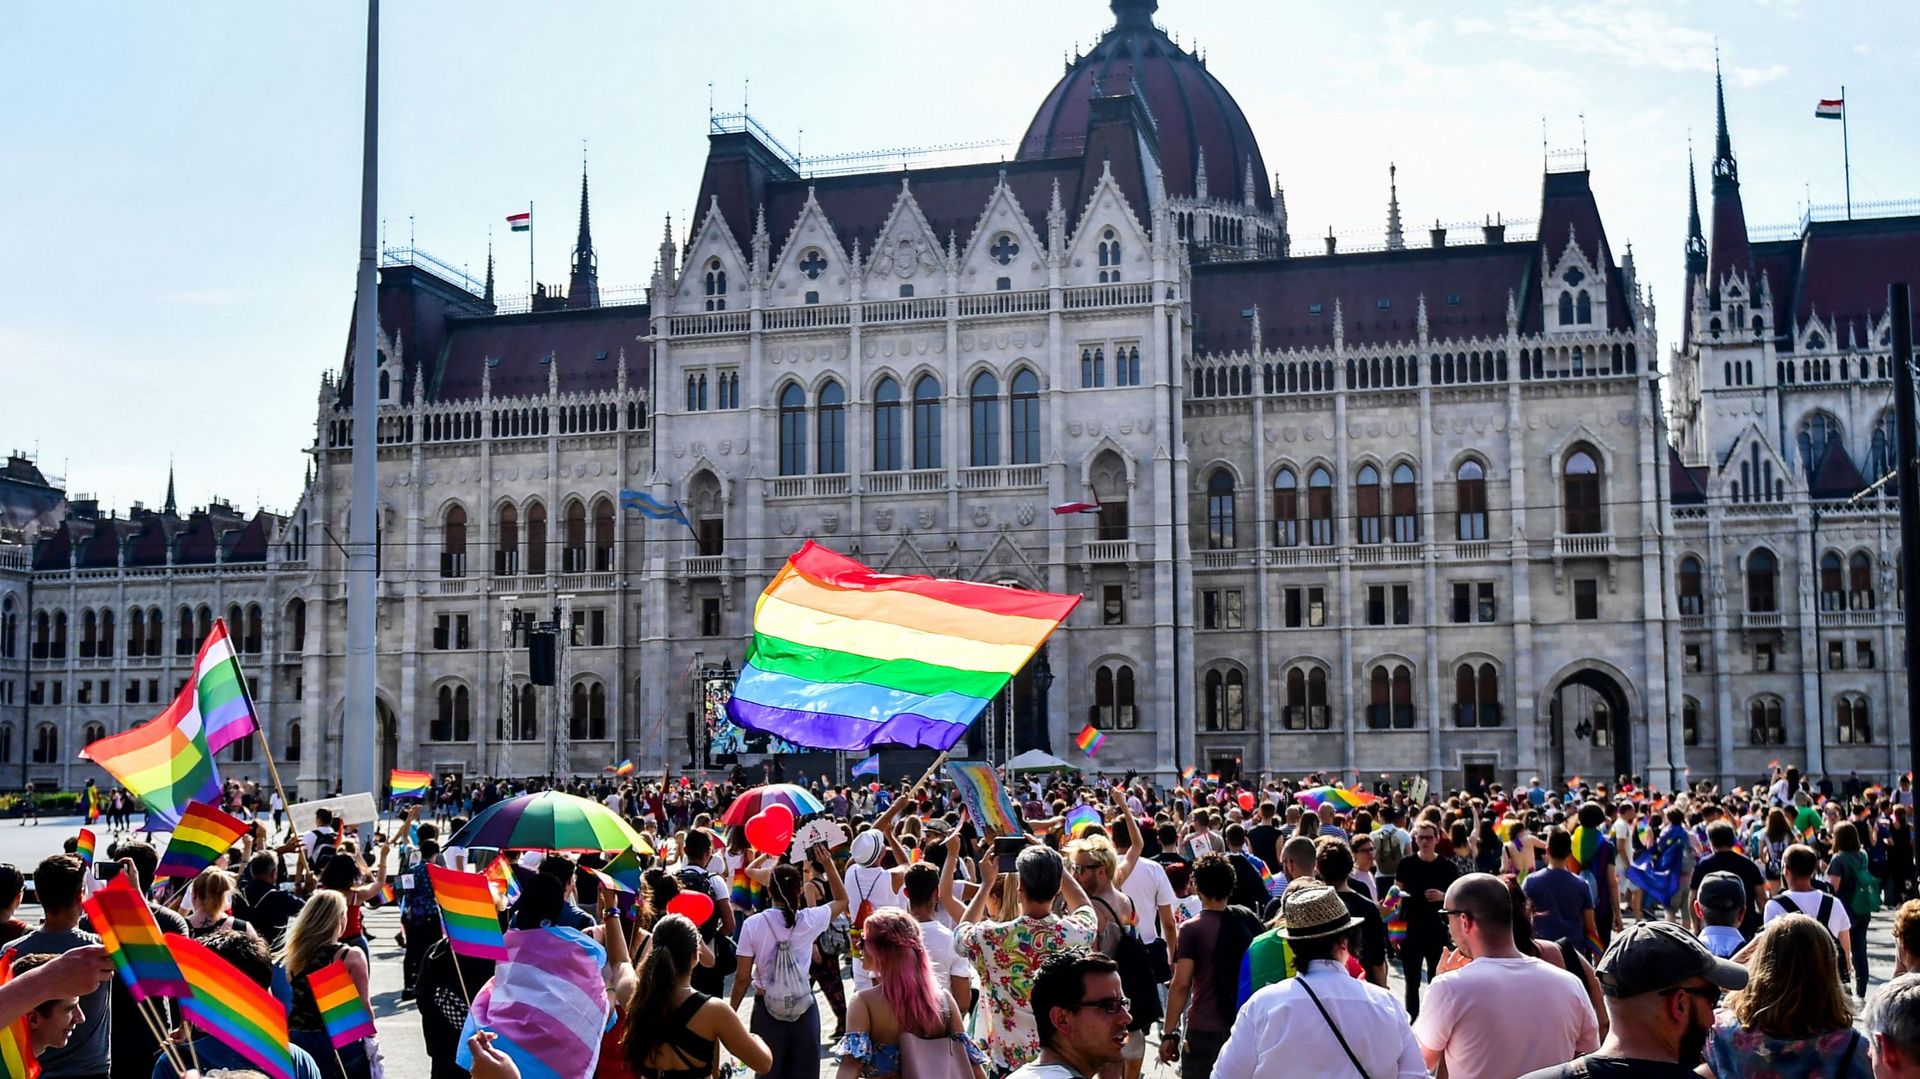 Photo d’illustration : Des personnes se dirigent vers le Parlement lors de la Pride des lesbiennes, gays, bisexuels et transgenres (LGBT) à Budapest, en Hongrie, le 7 juillet 2018